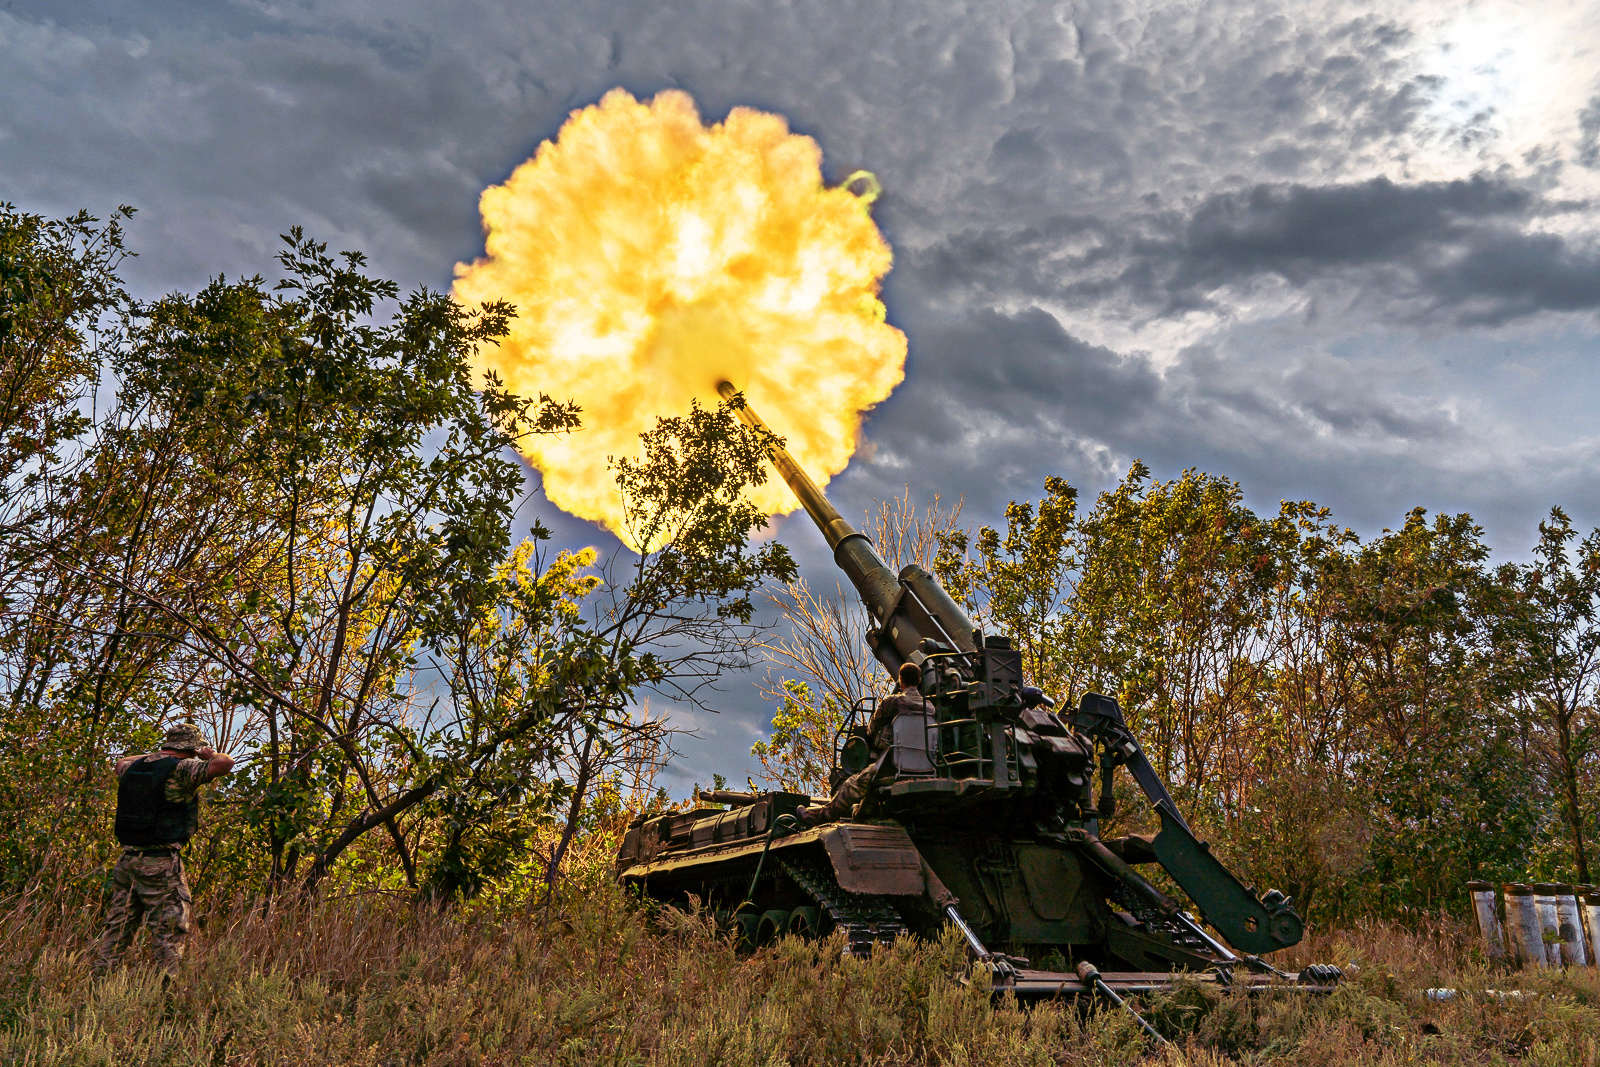 Ukrainian howitzer firing during battle